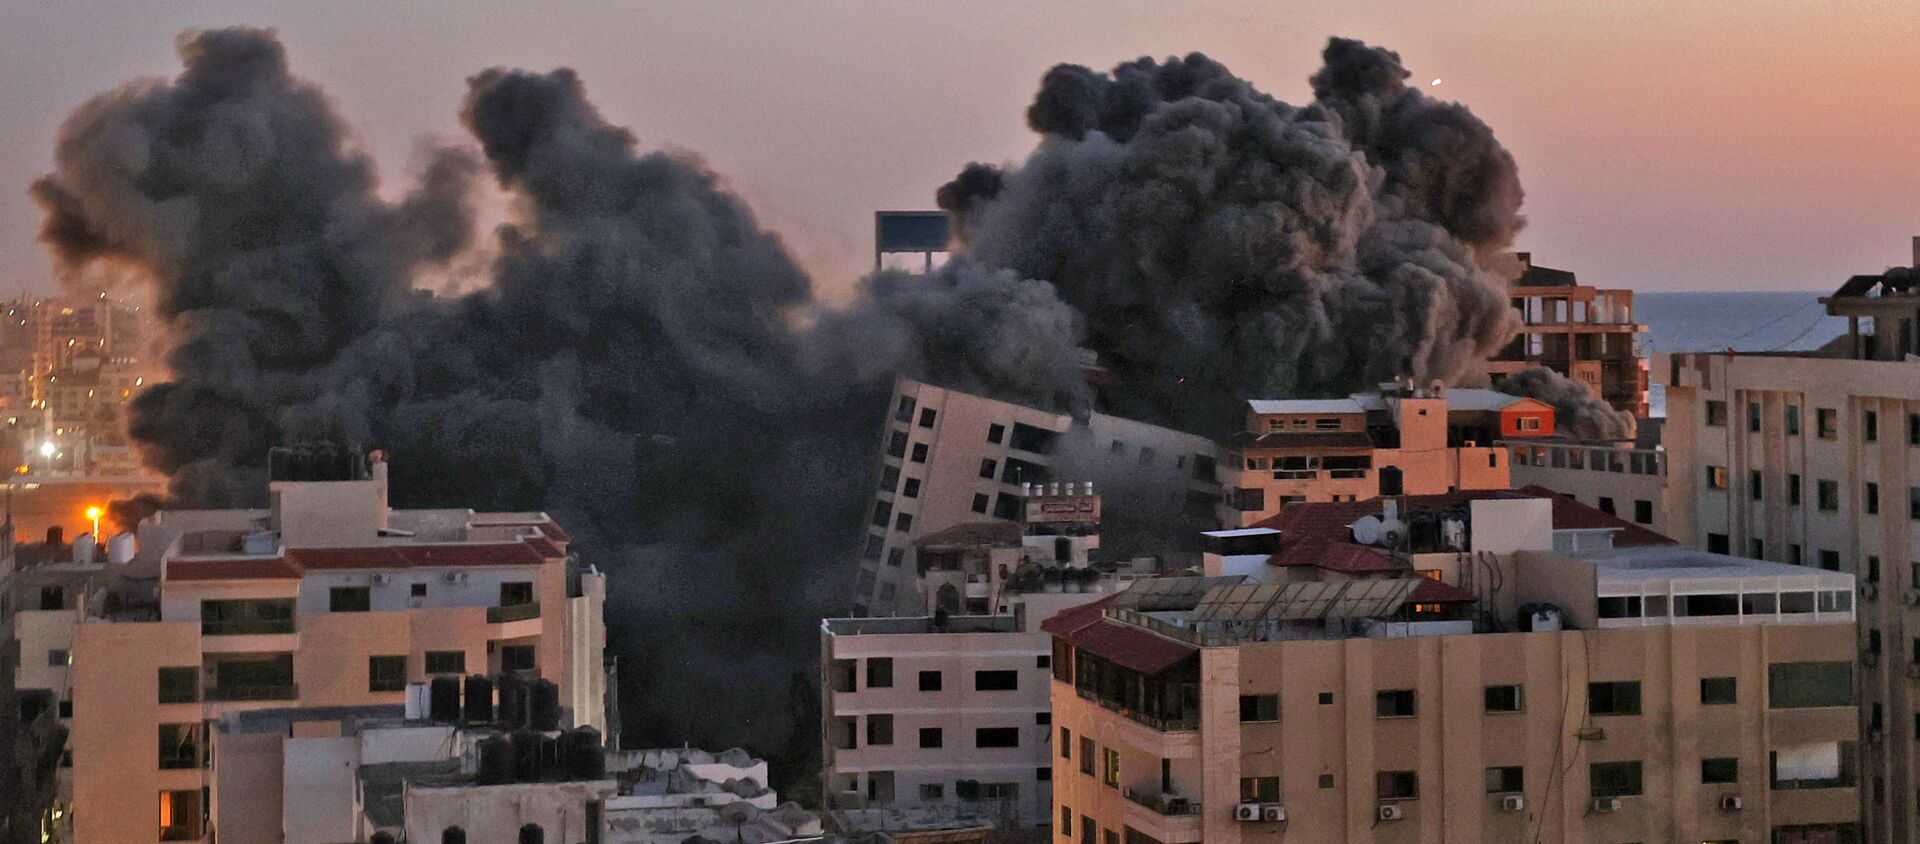 Пожарные тушат горящие многоквартирные дома после израильских авиаударов в городе Газа - Sputnik Արմենիա, 1920, 17.05.2021